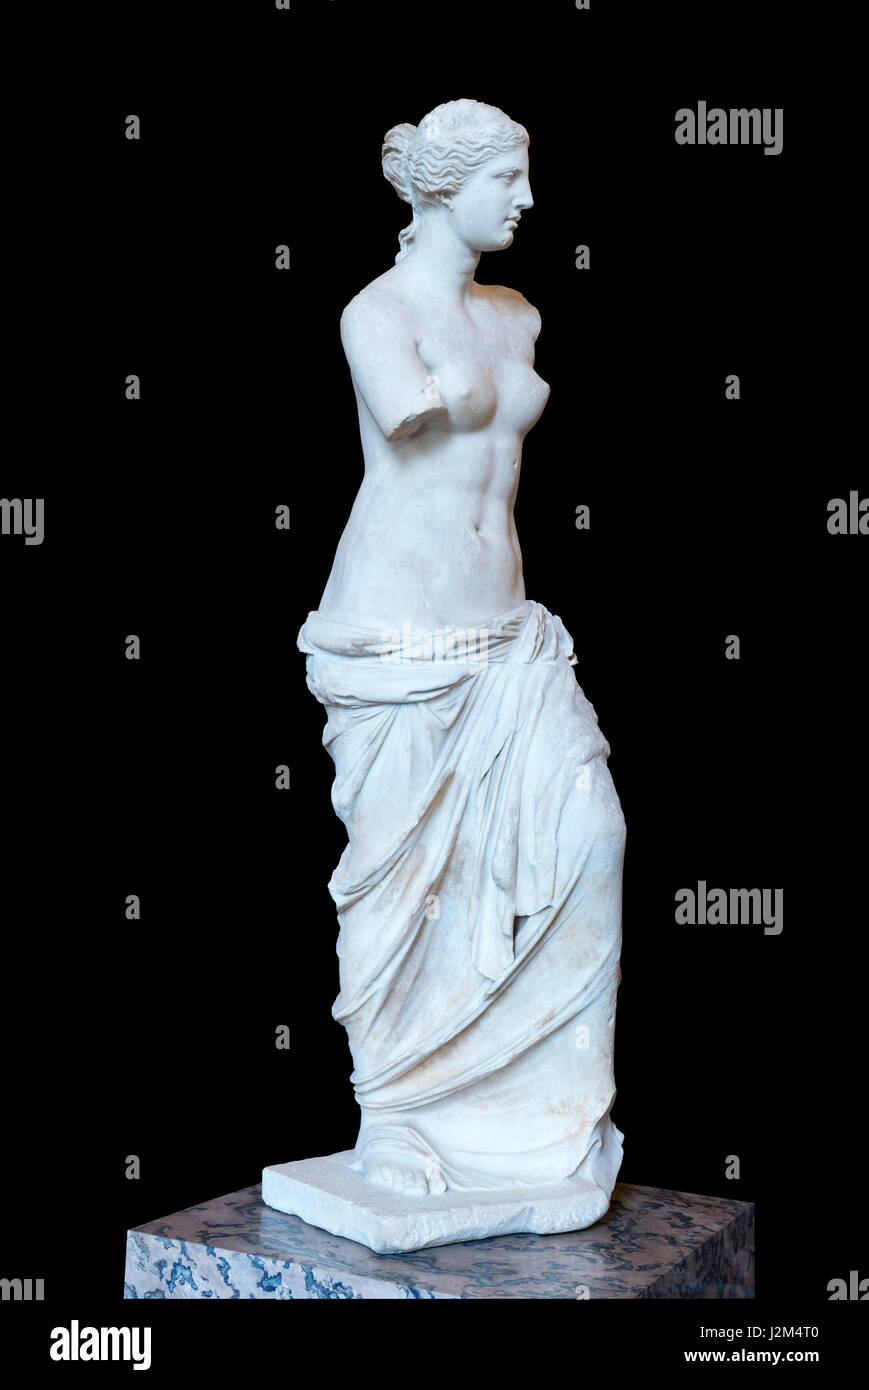 Venus de Milo (Afrodita de Milos), una antigua estatua griega, probablemente por Alexandros de Antioquía, que datan de alrededor de 130-100 AC. La efigie de Afrodita, la diosa griega del amor y de la belleza. Foto de stock